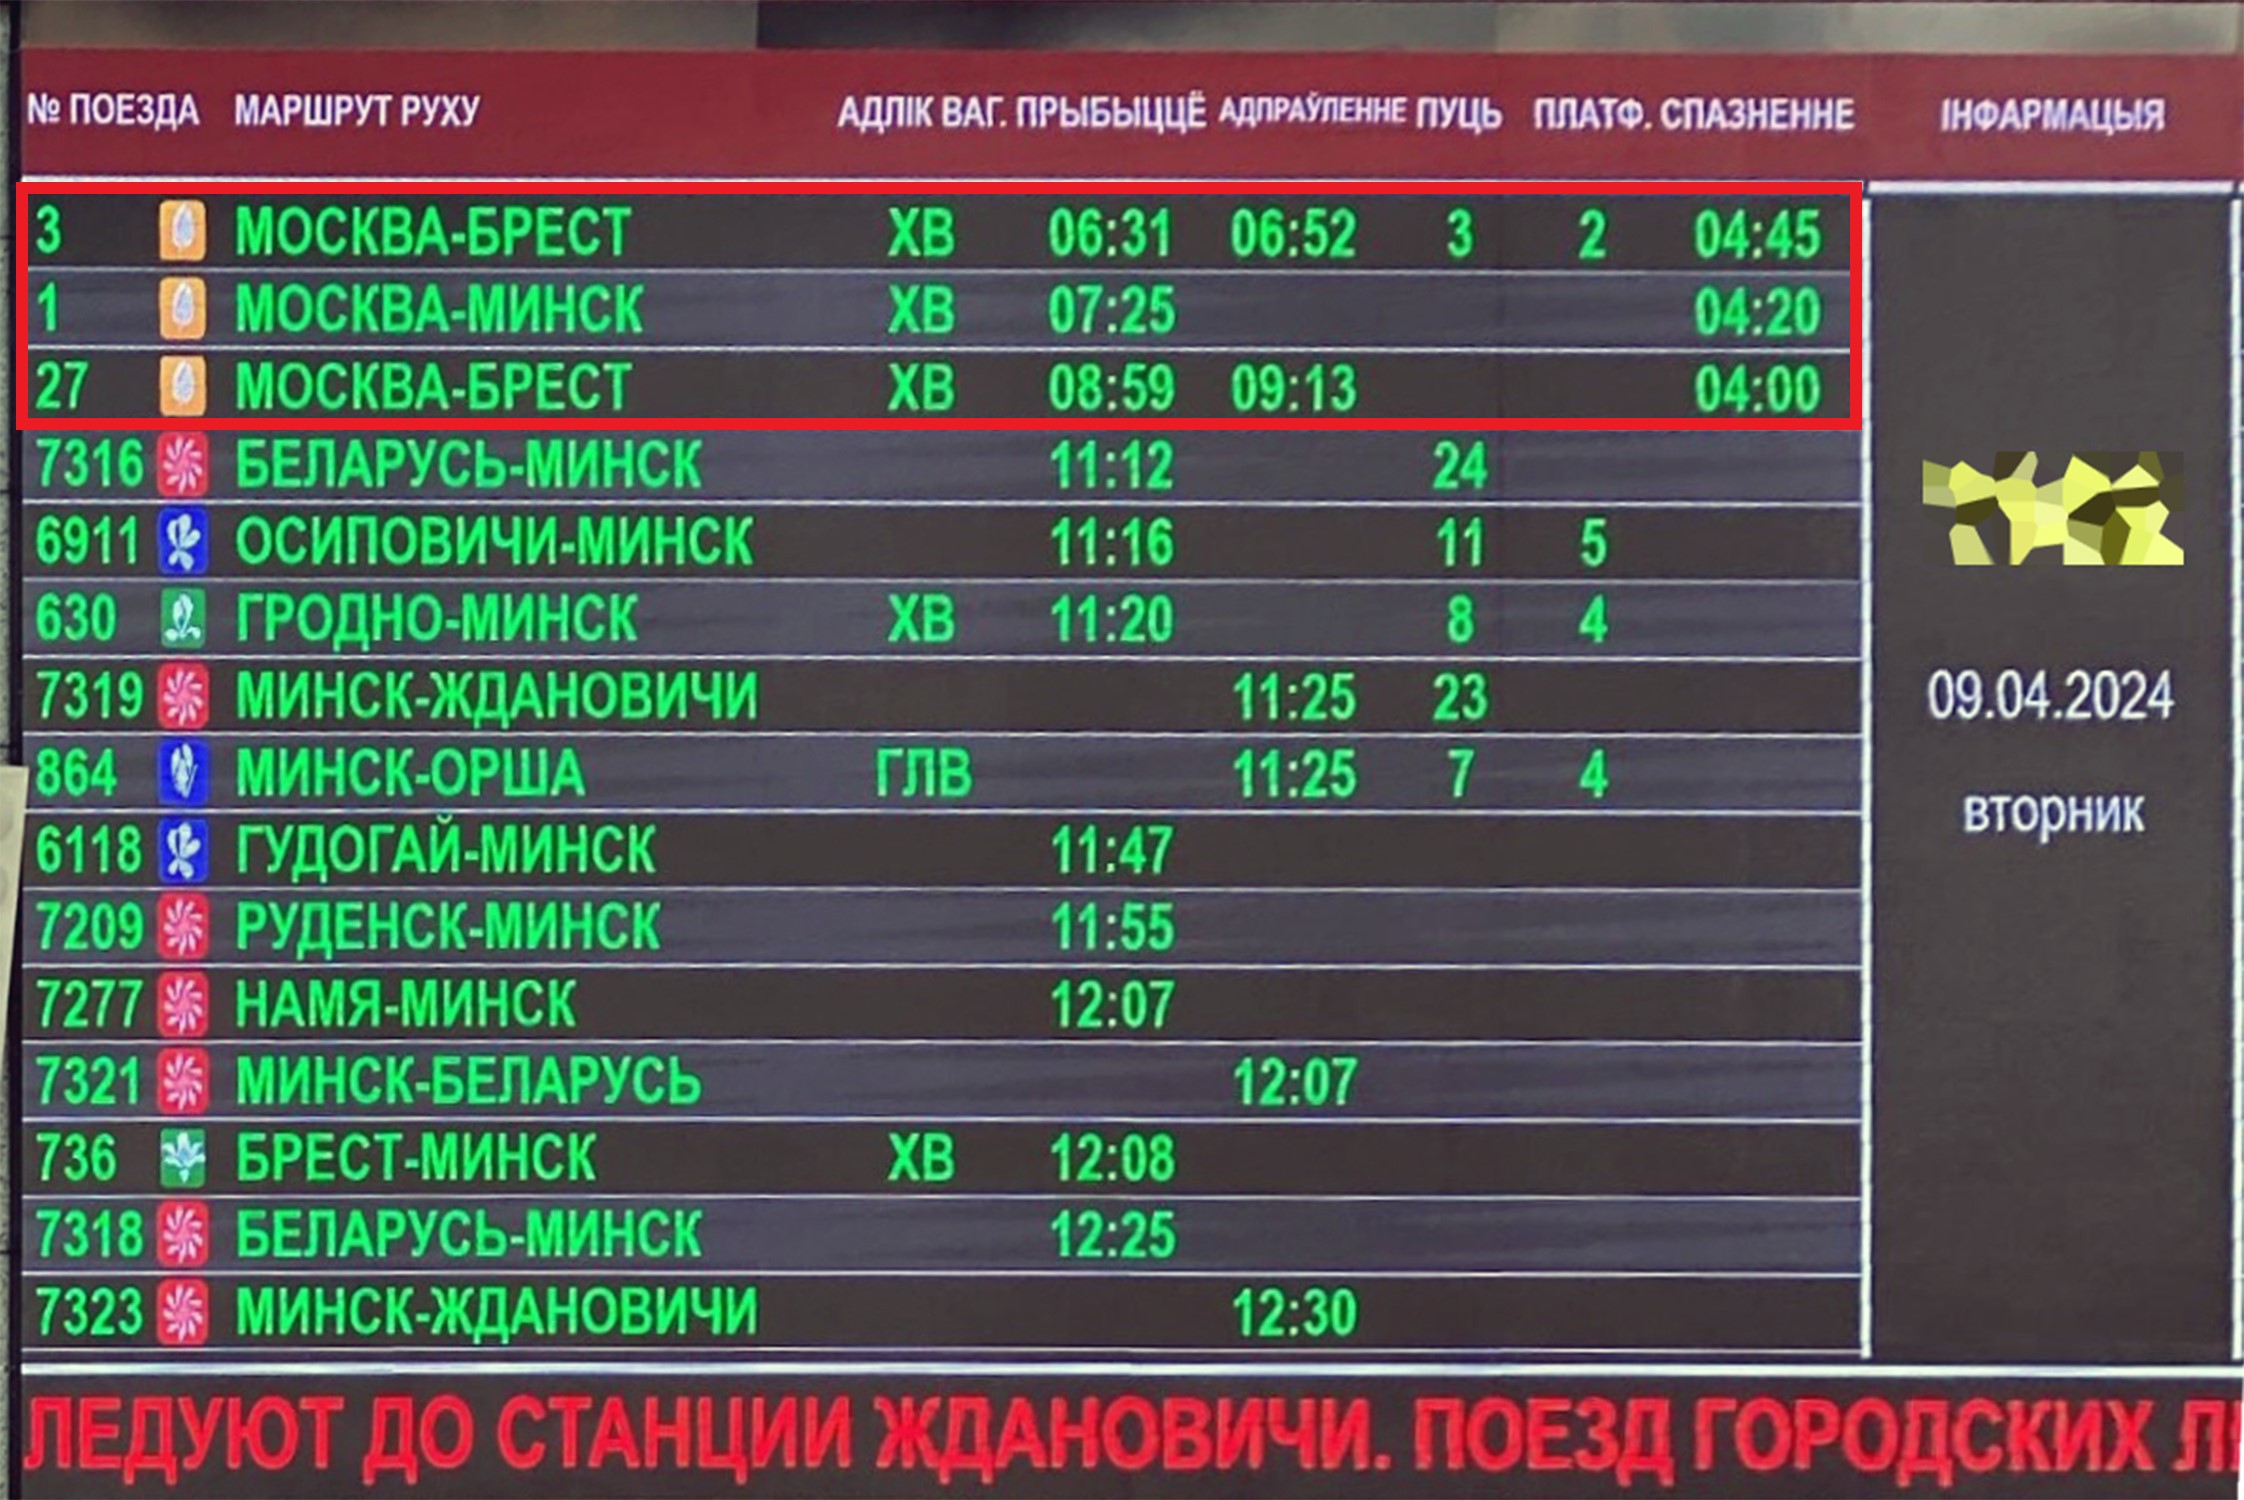 Фото информационного табло в здании вокзала станции Минск-Пассажирский 09.04.2024